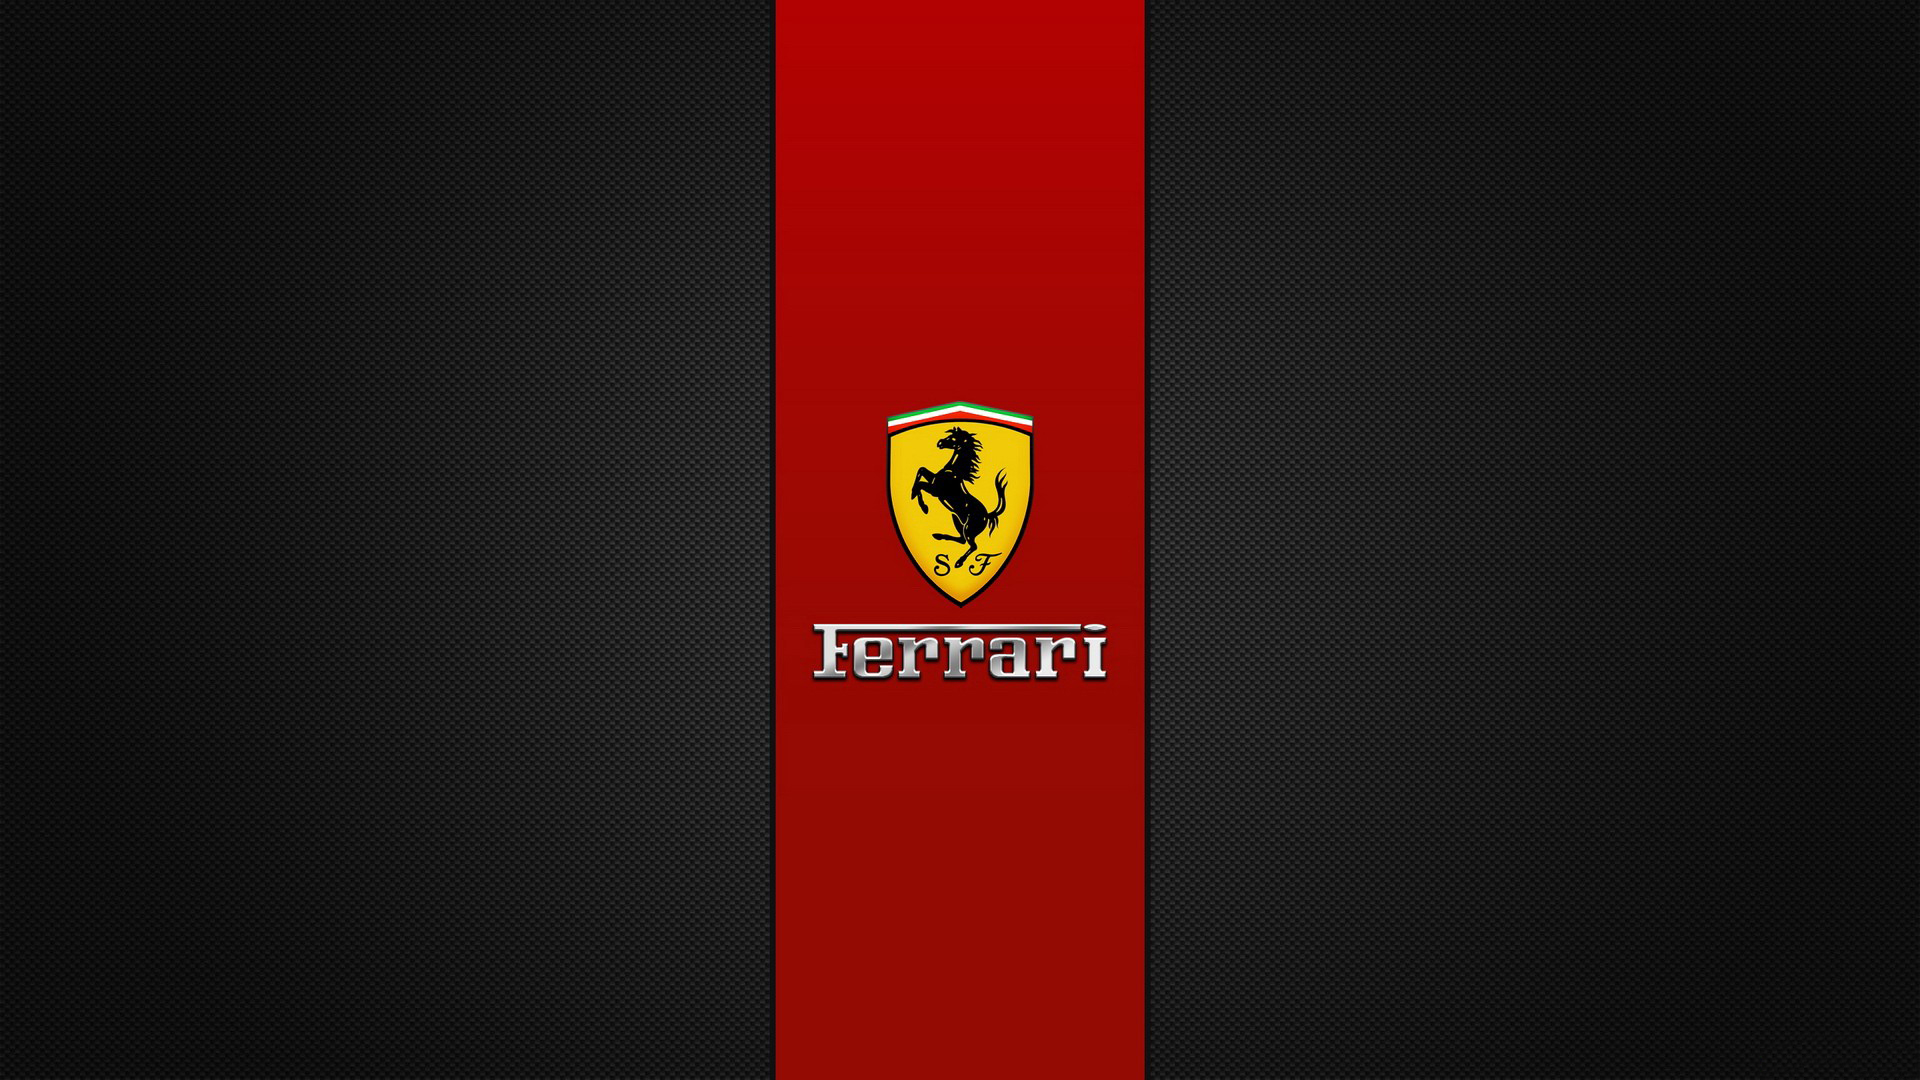 Wallpapers ferrari logo brand on the desktop